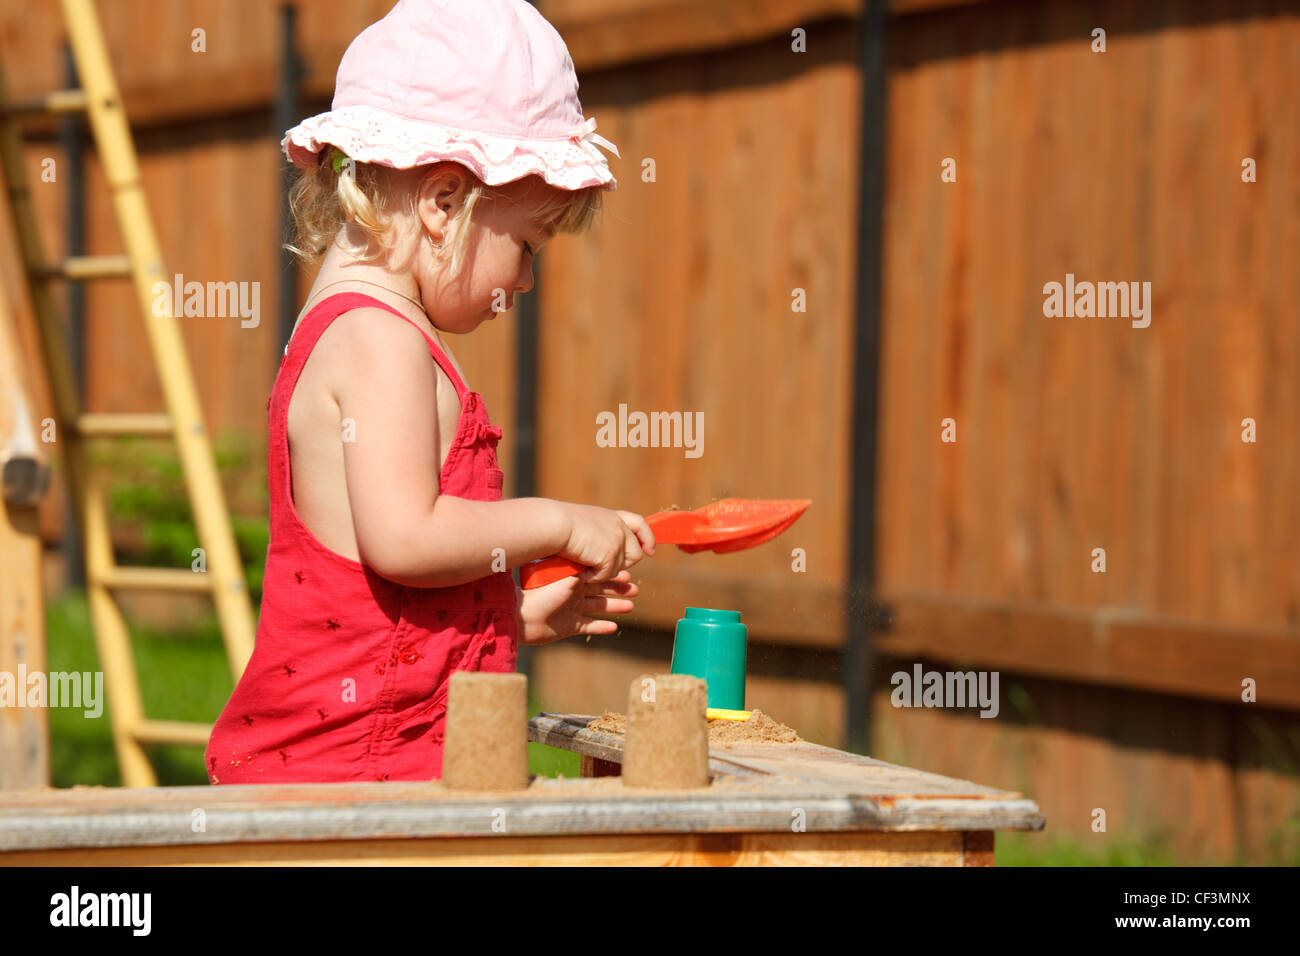 La fille joue à un bac à sable. Format horizontal. Banque D'Images